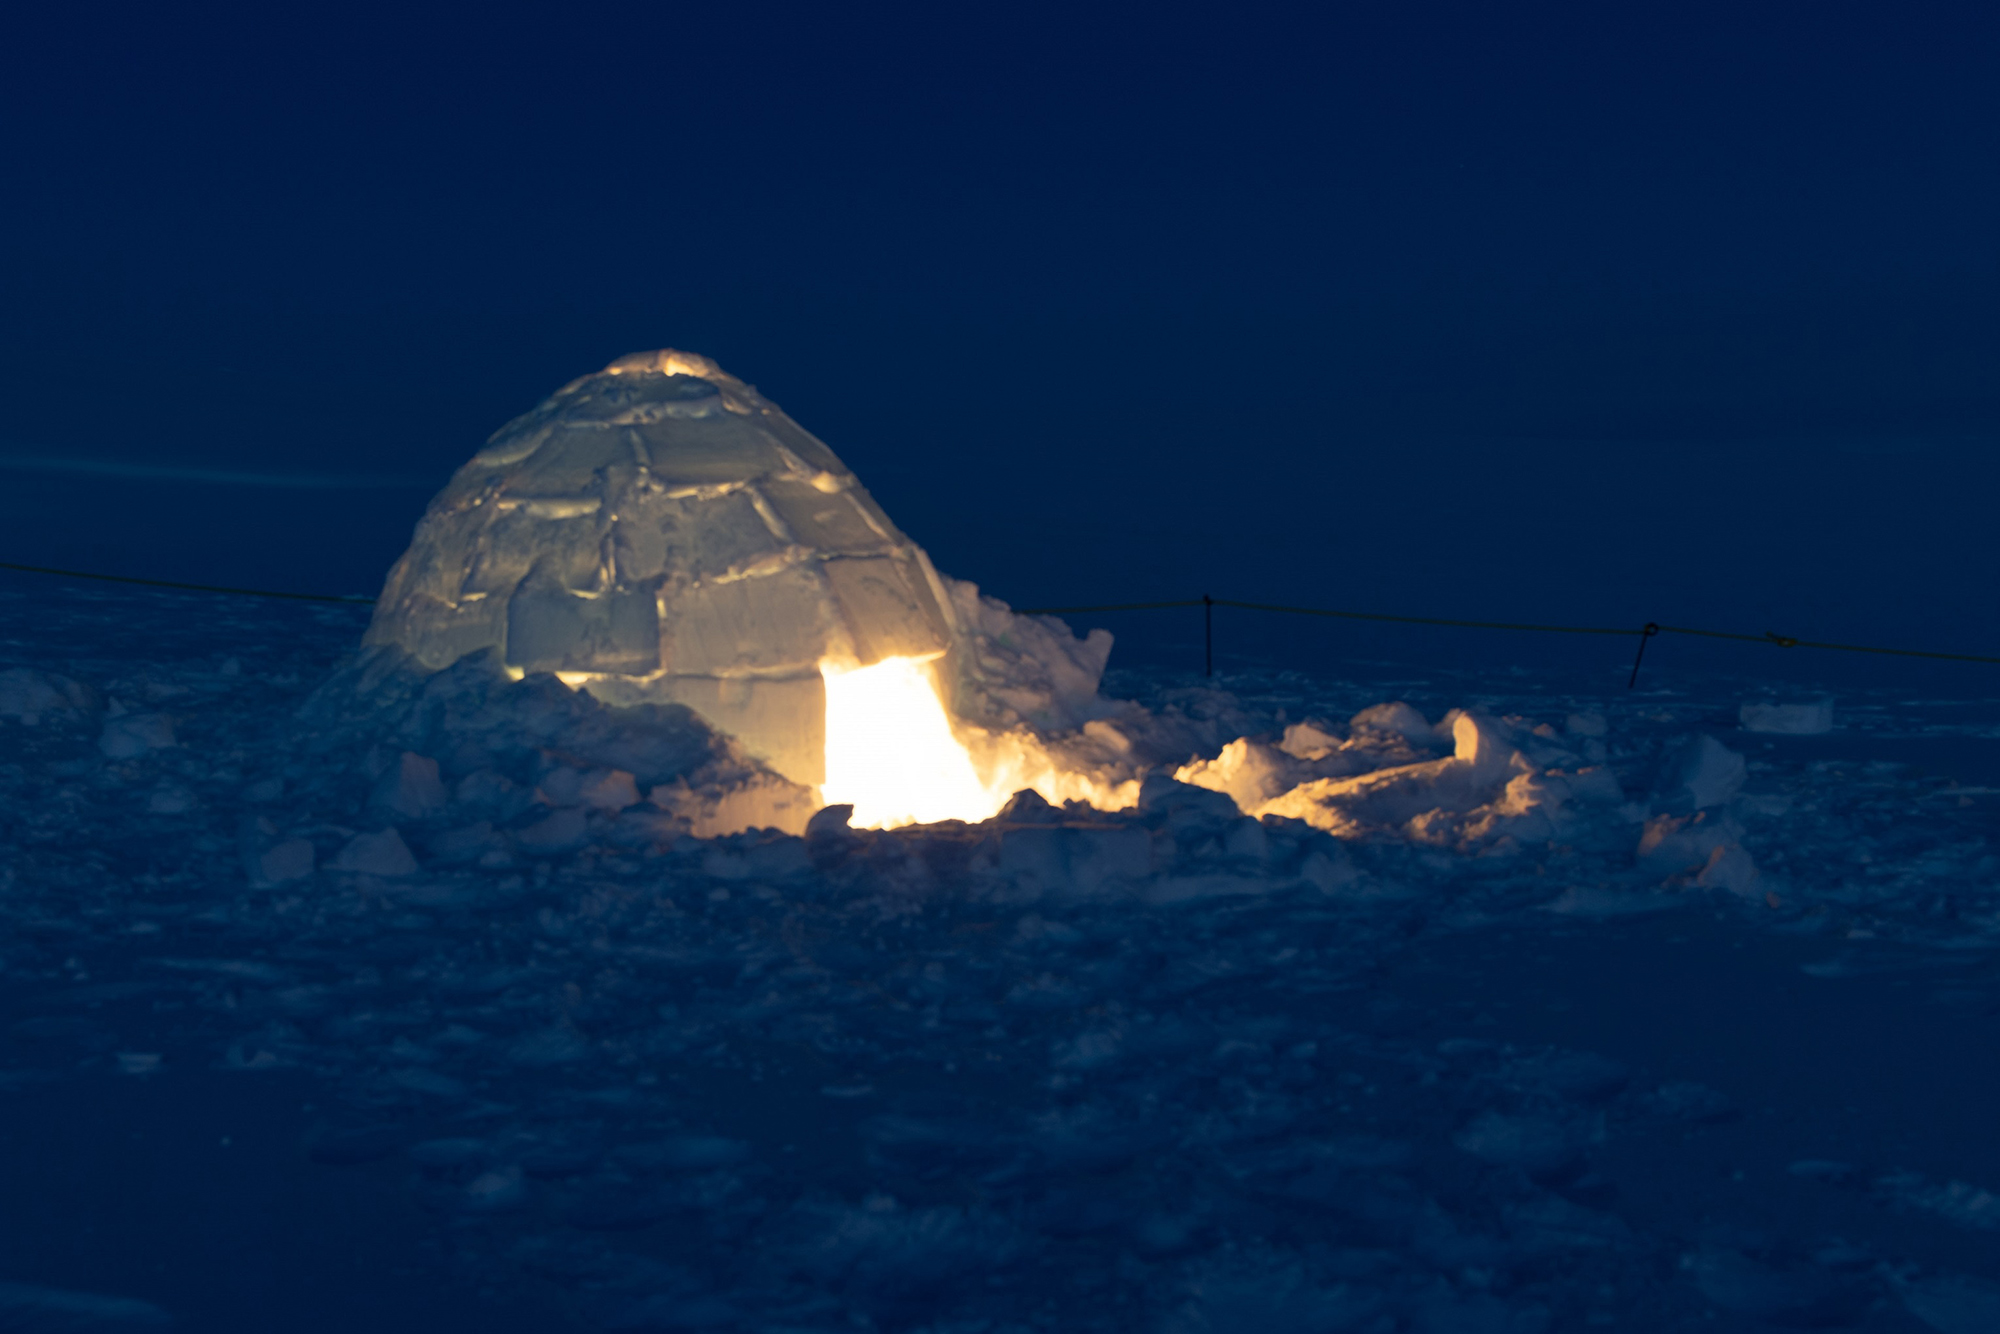 Une photo d’un igloo illuminé pendant la nuit.